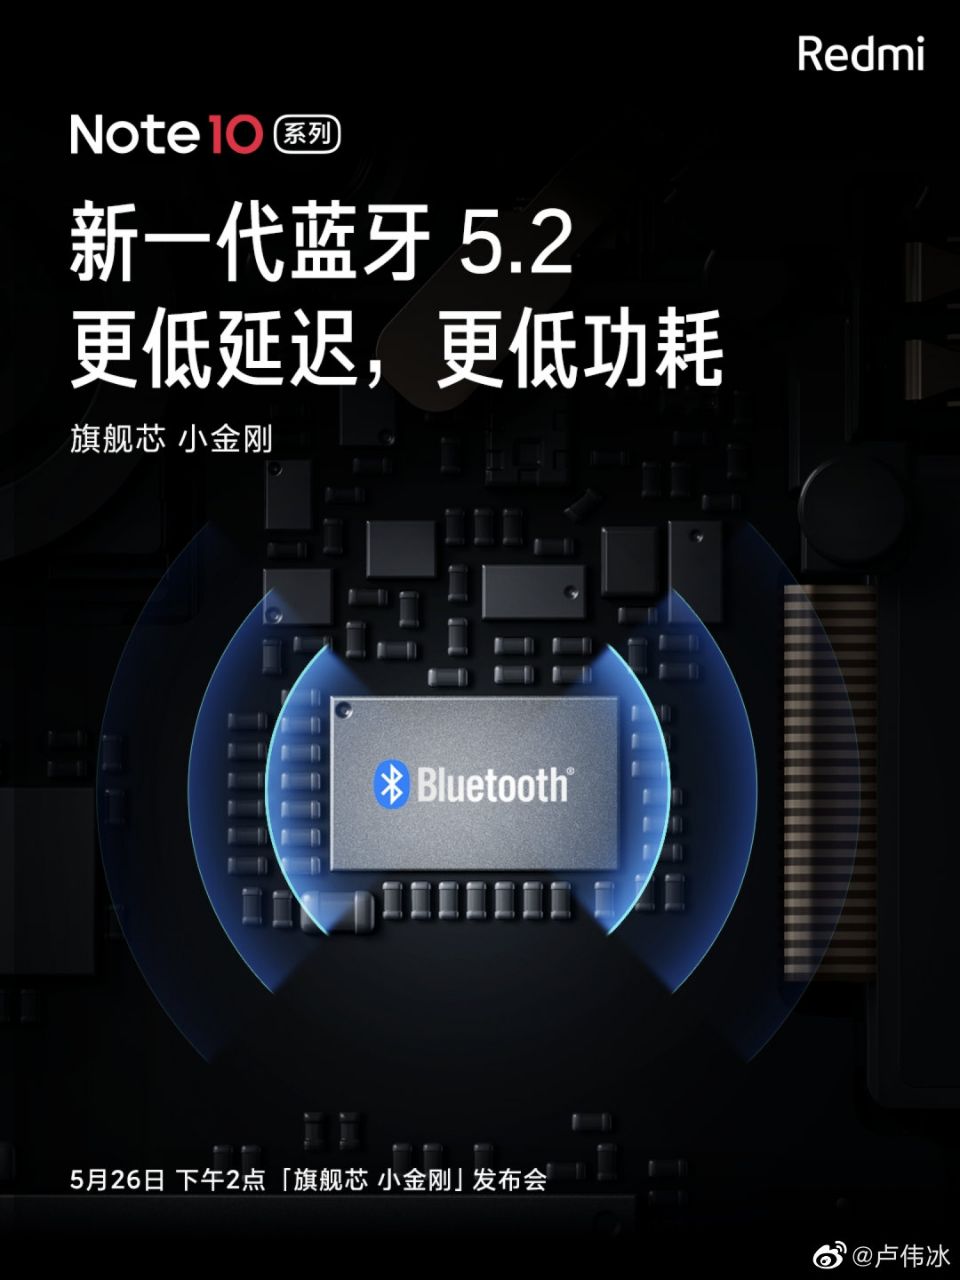 بلوتوث نسخه ۵.٢ در سری چینی ردمی نوت ١٠